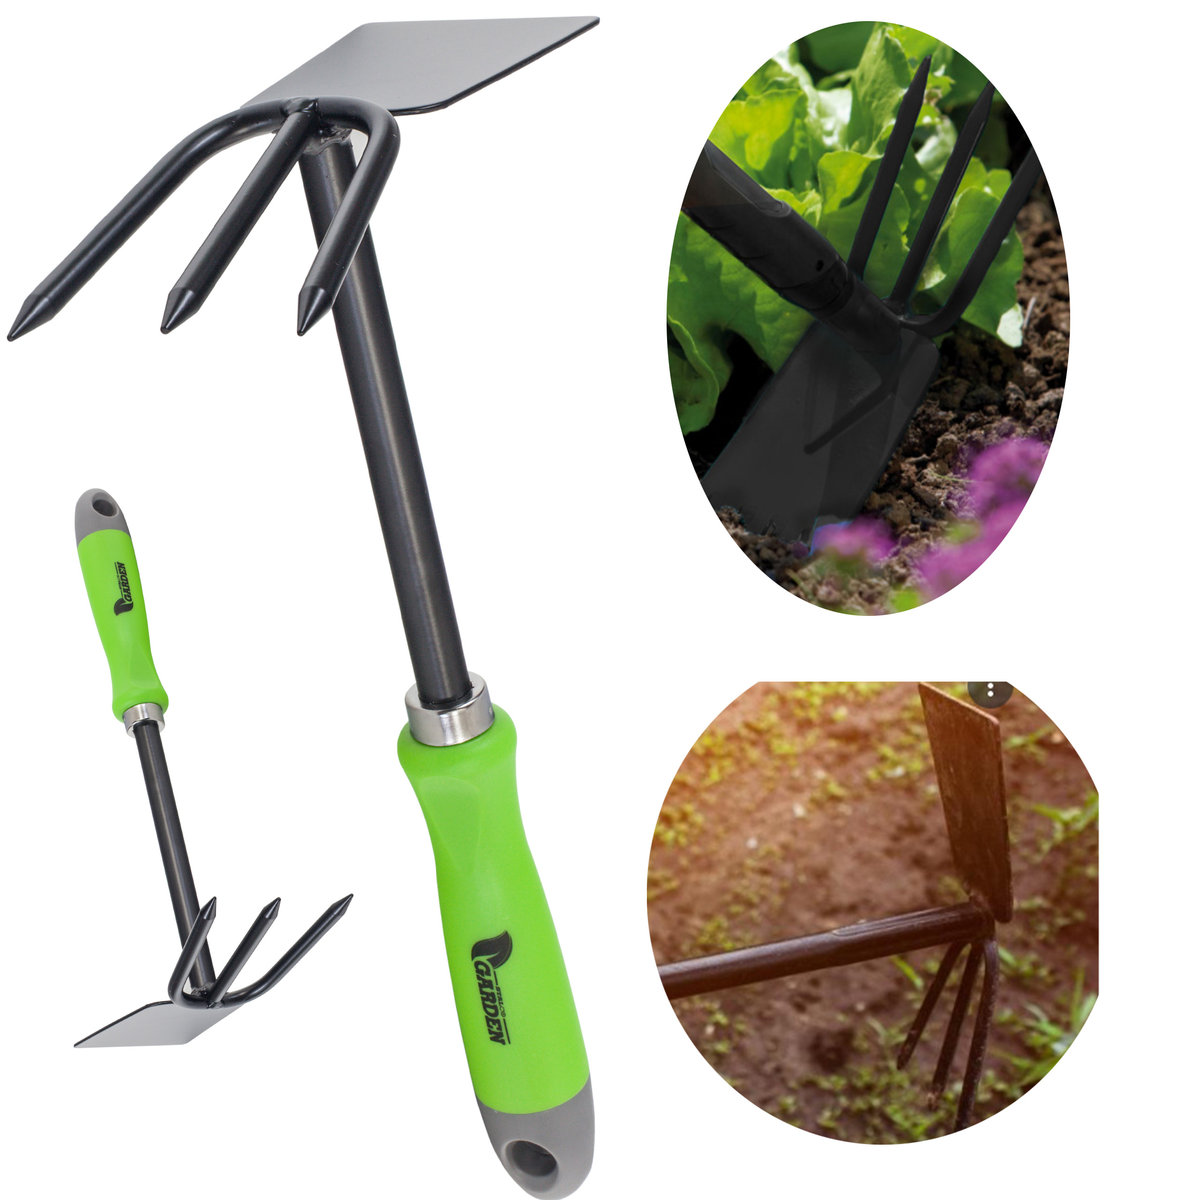 Zdjęcia - Pozostałe narzędzia ogrodnicze STALCO Motyka z widełkami ogród spulchnianie gleby 180mm 